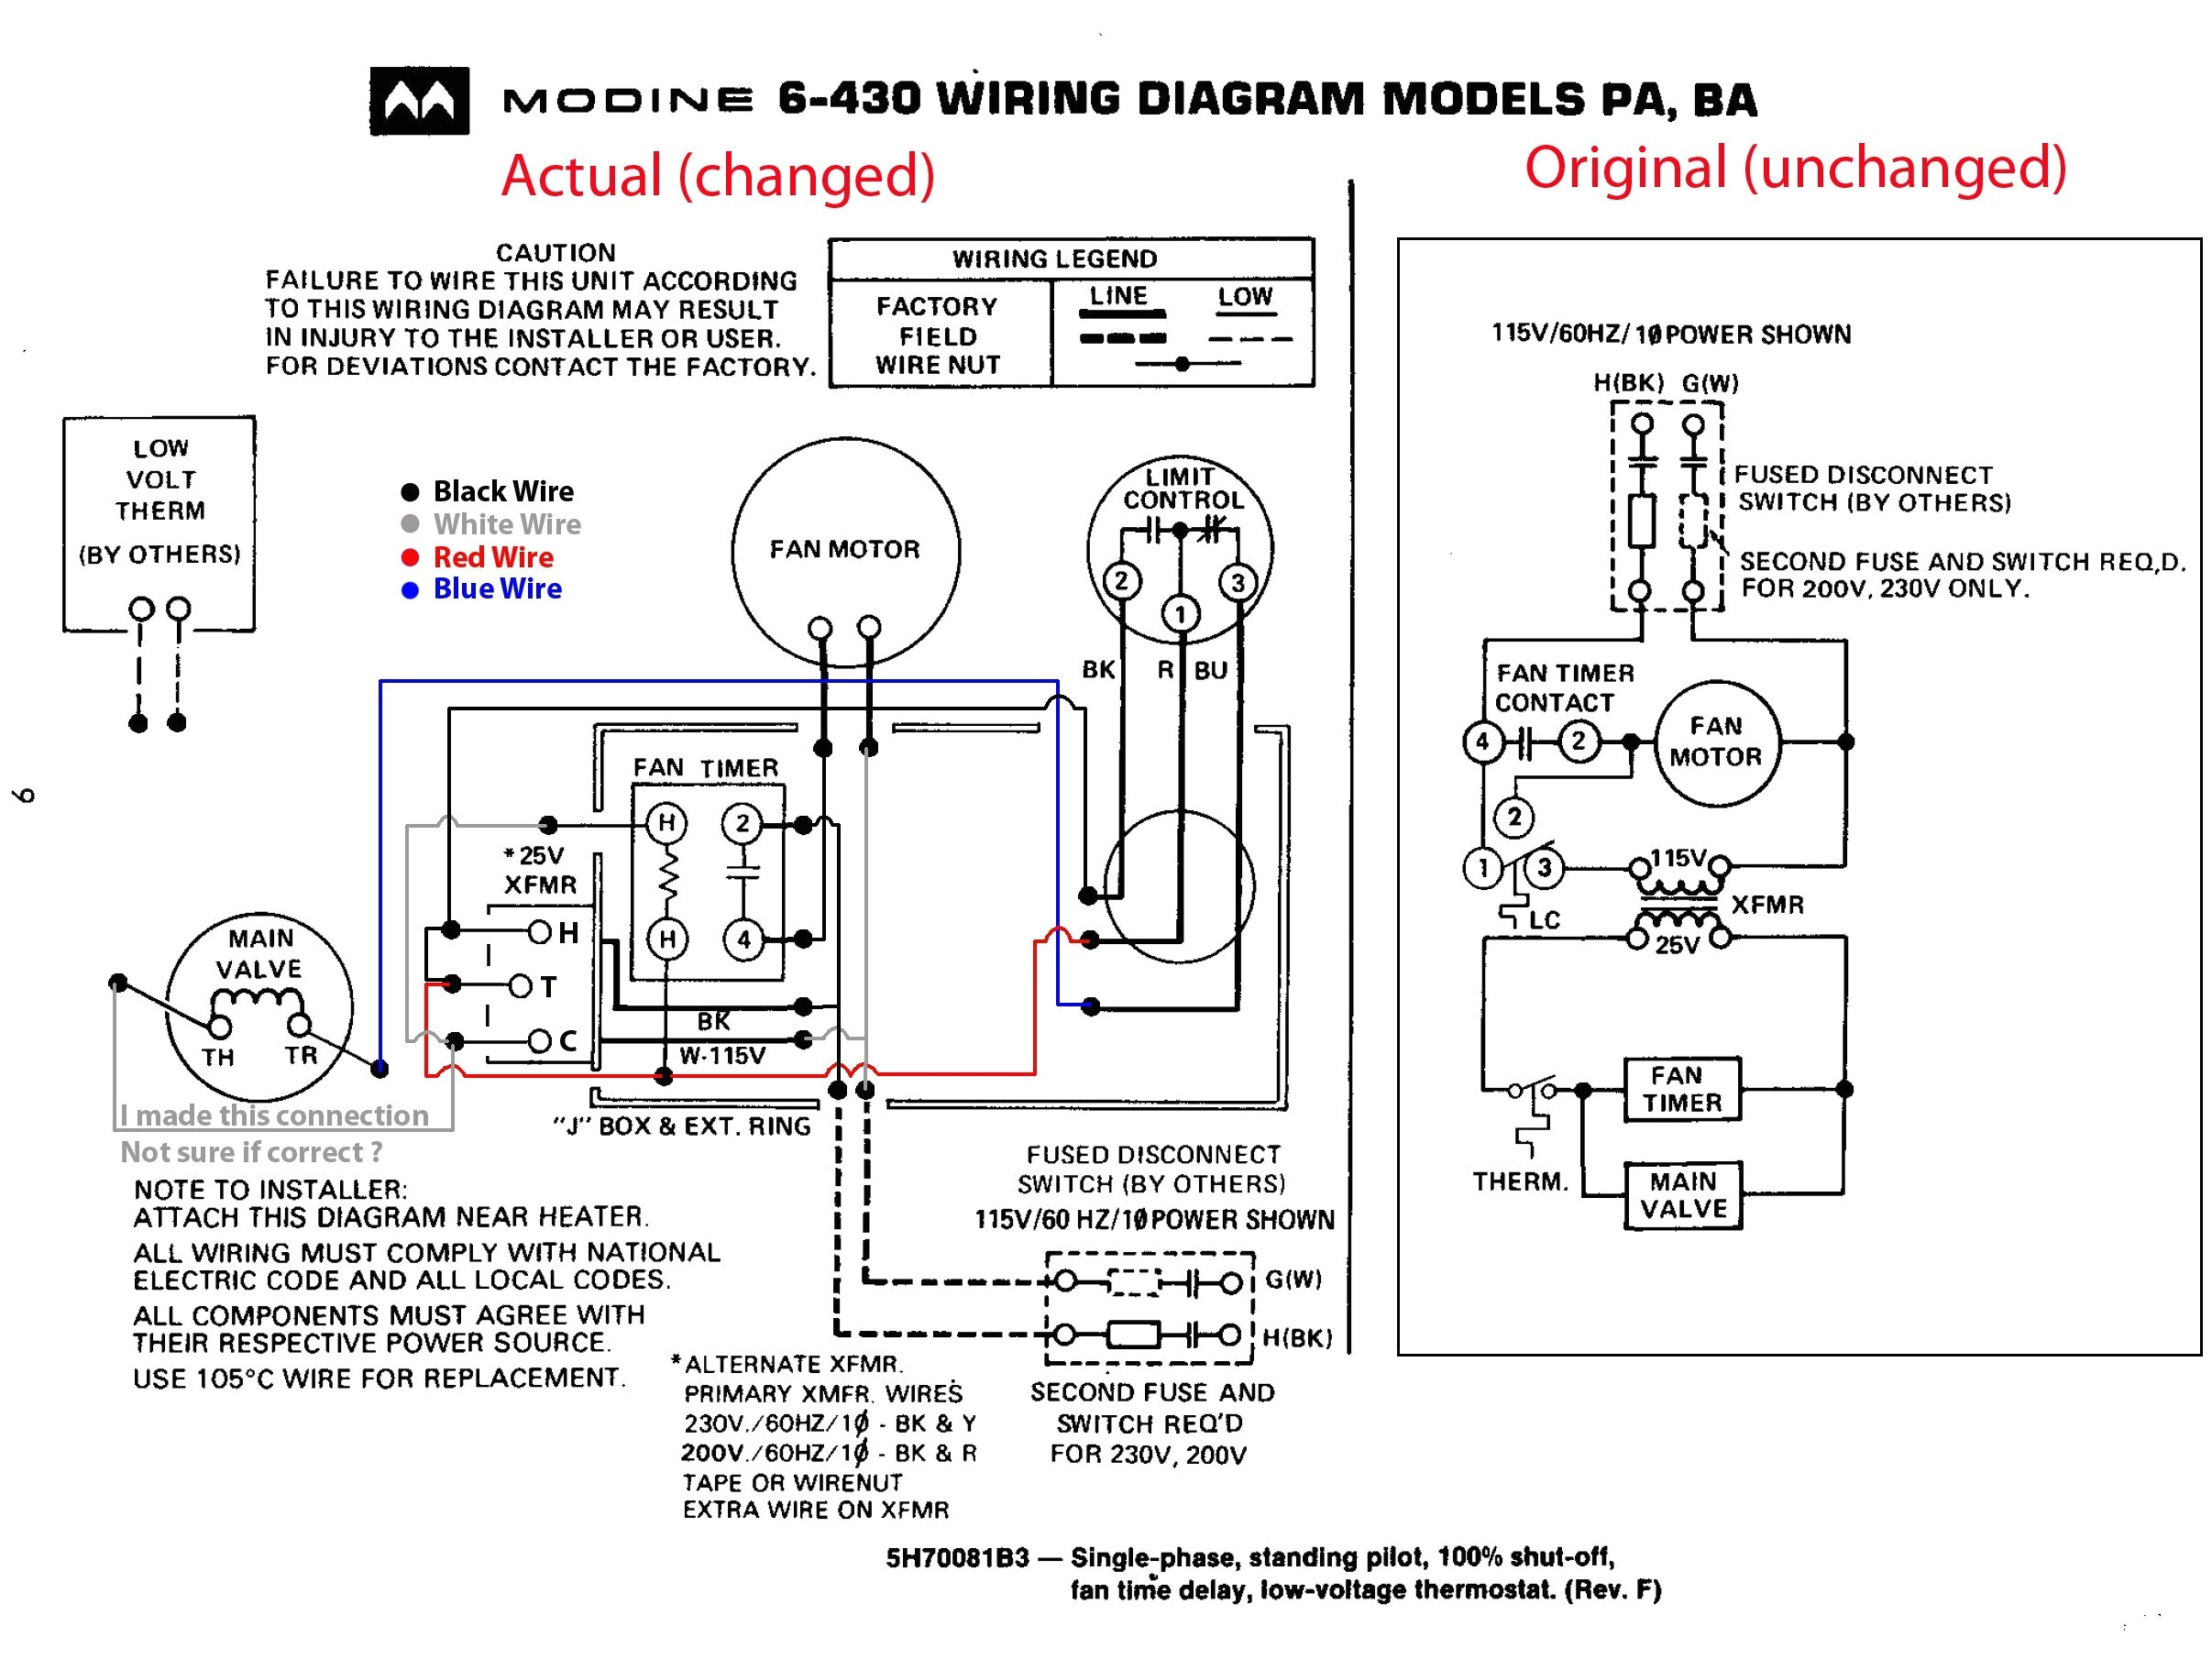 dayton furnace wiring diagram wiring diagram centre dayton furnace wiring diagram